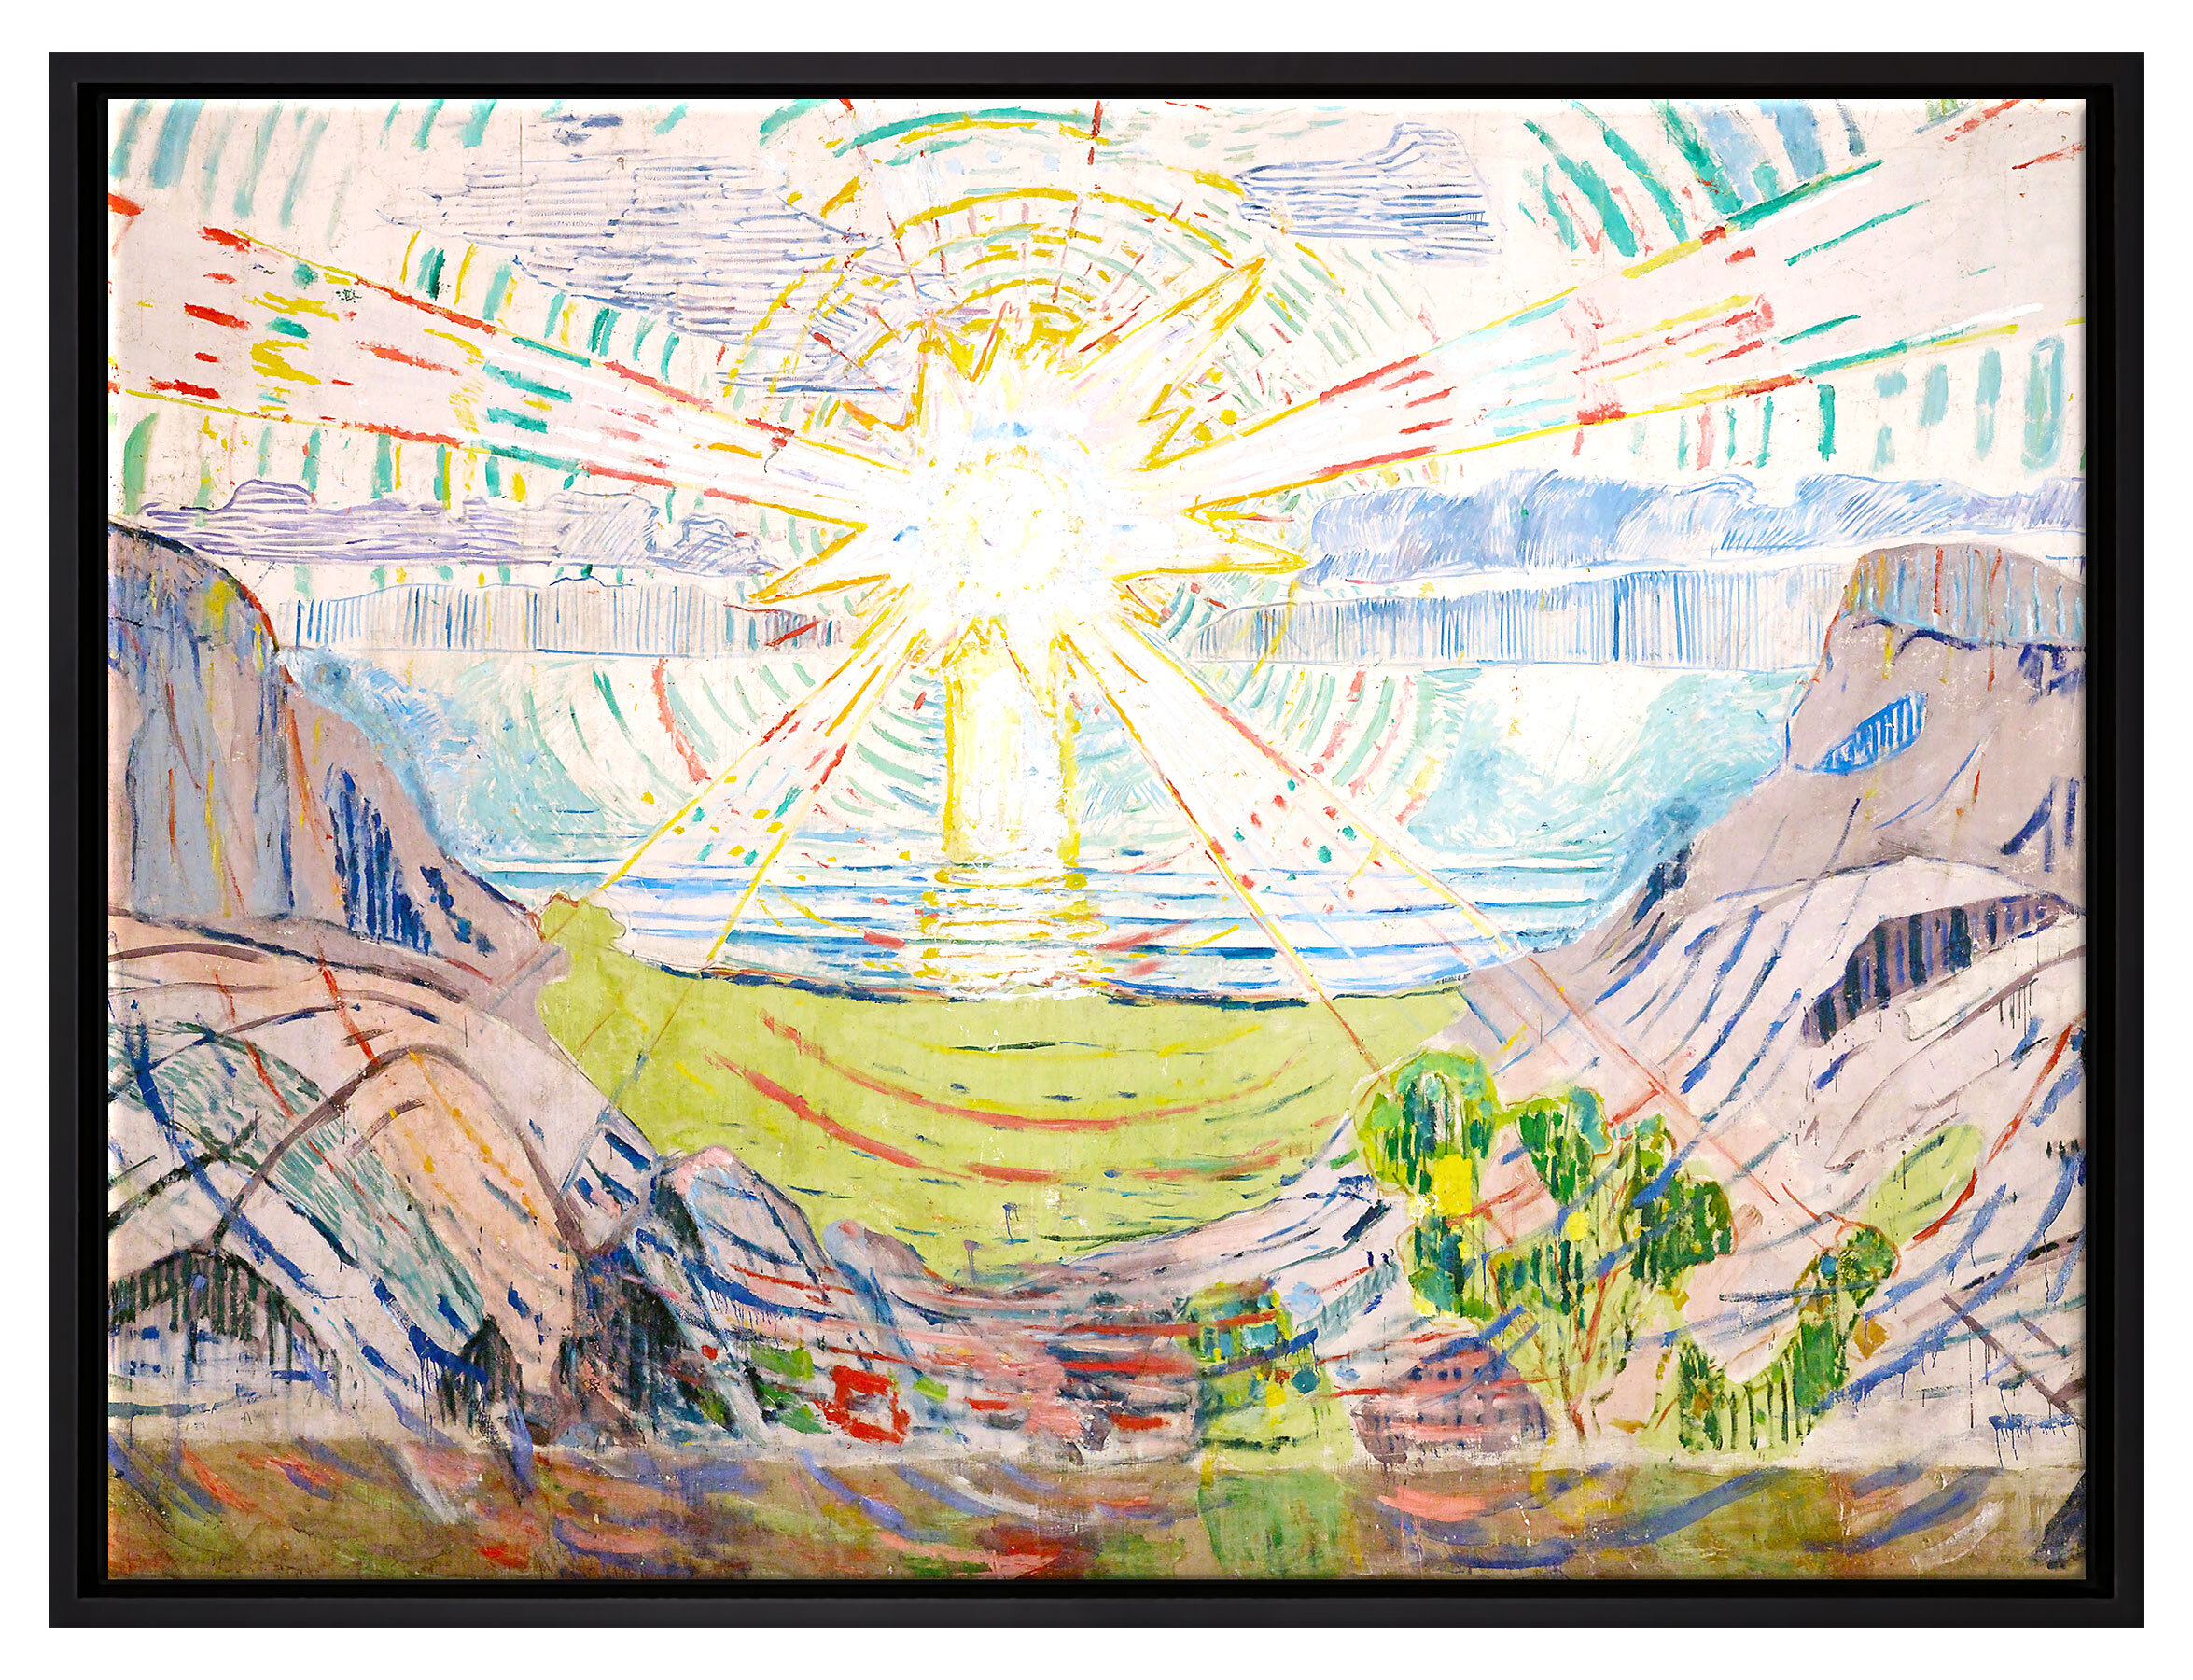 Union Rustic Gerahmter Kunstdruck Leinwandbild Die Sonne von Edvard Munch